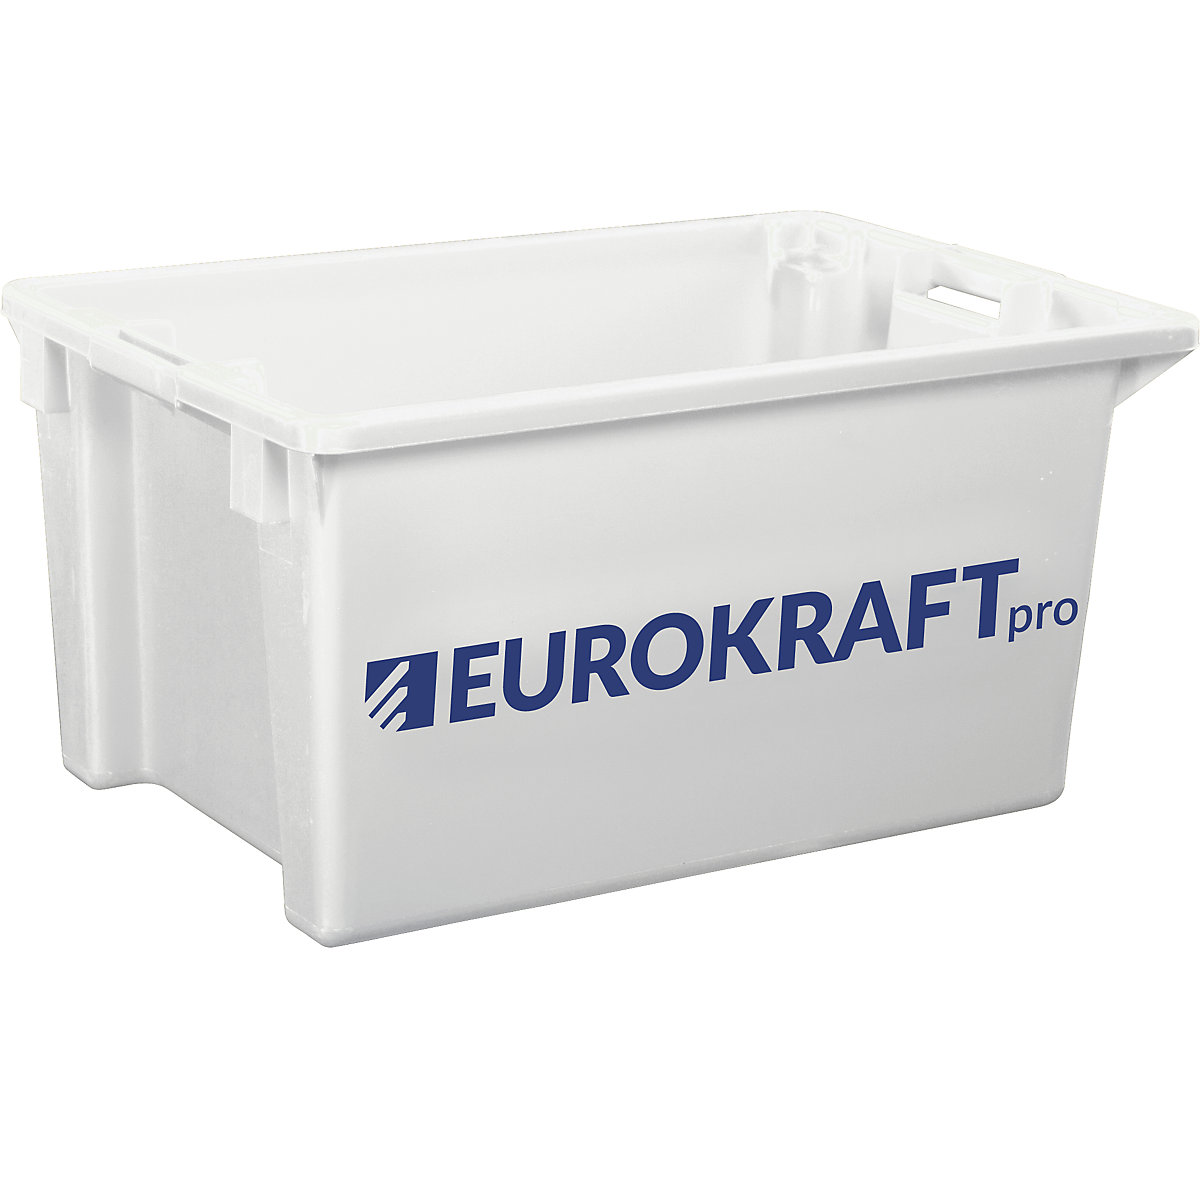 EUROKRAFTpro – Spremnik za slaganje od polipropilena pogodnog za kontakt s prehrambenim proizvodima, volumen 70 l, pak. 2 kom., zatvorene stijenke i dno, u prirodnoj boji